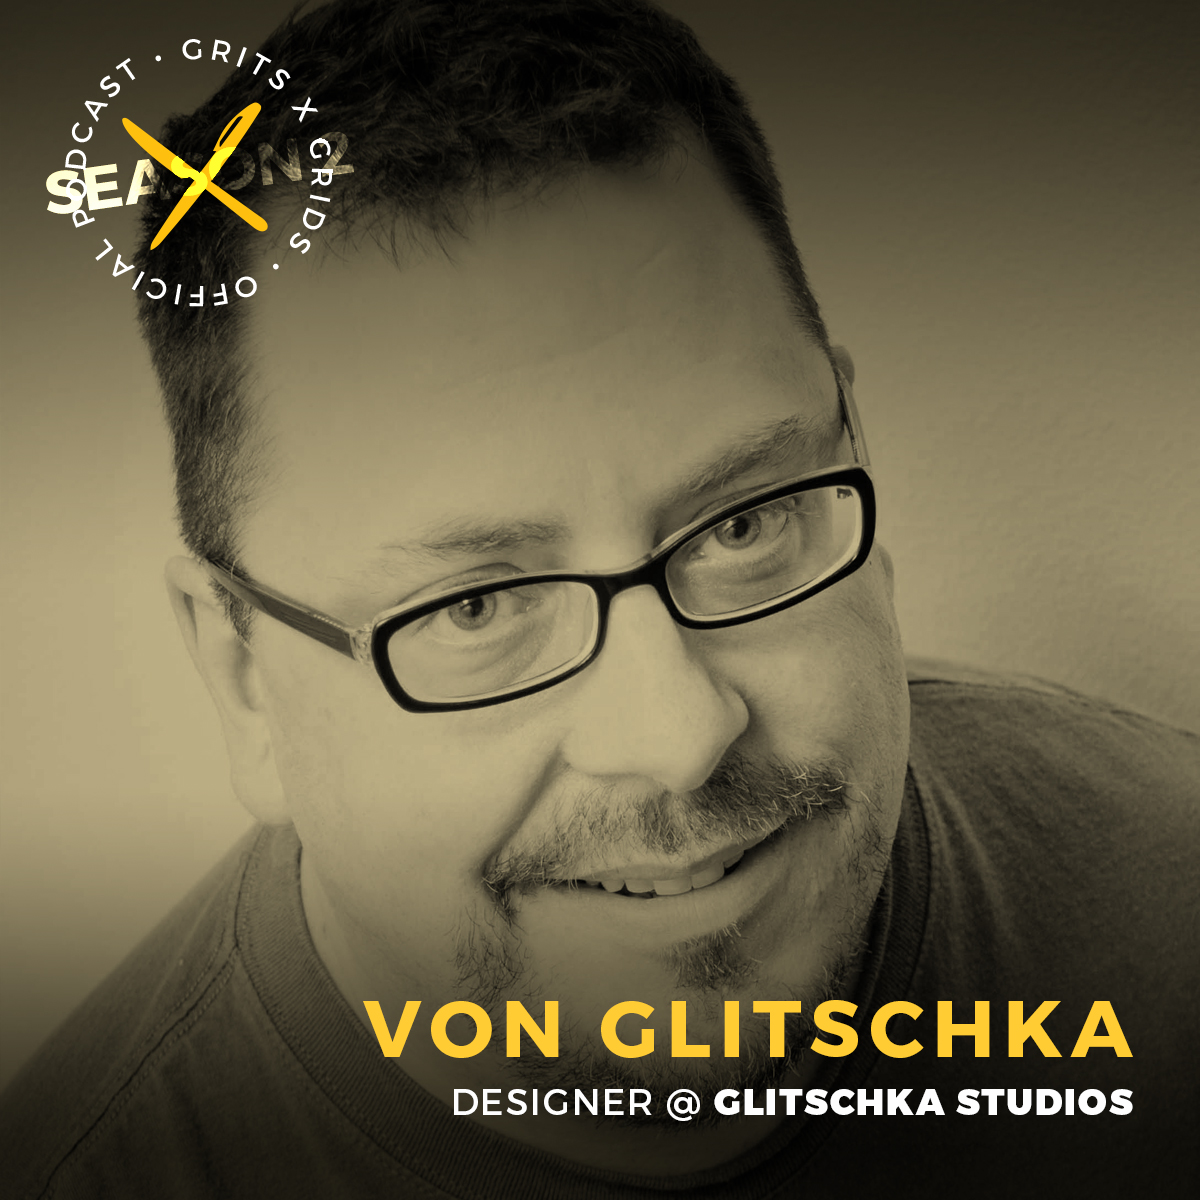 Podcast episode with designer and illustrator Von Glitschka